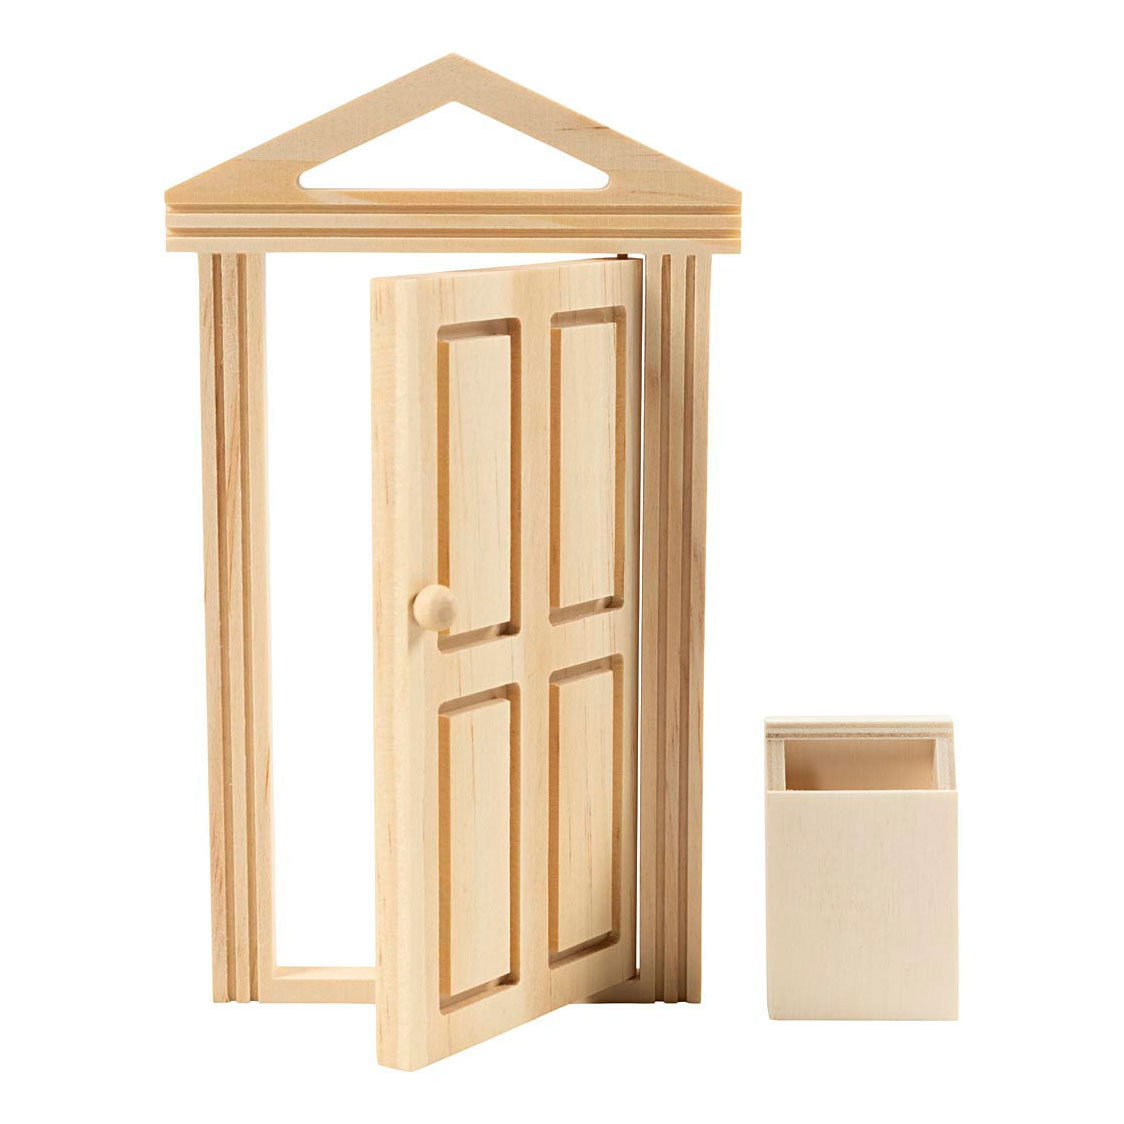 Mini-Tür und Briefkasten aus Holz.